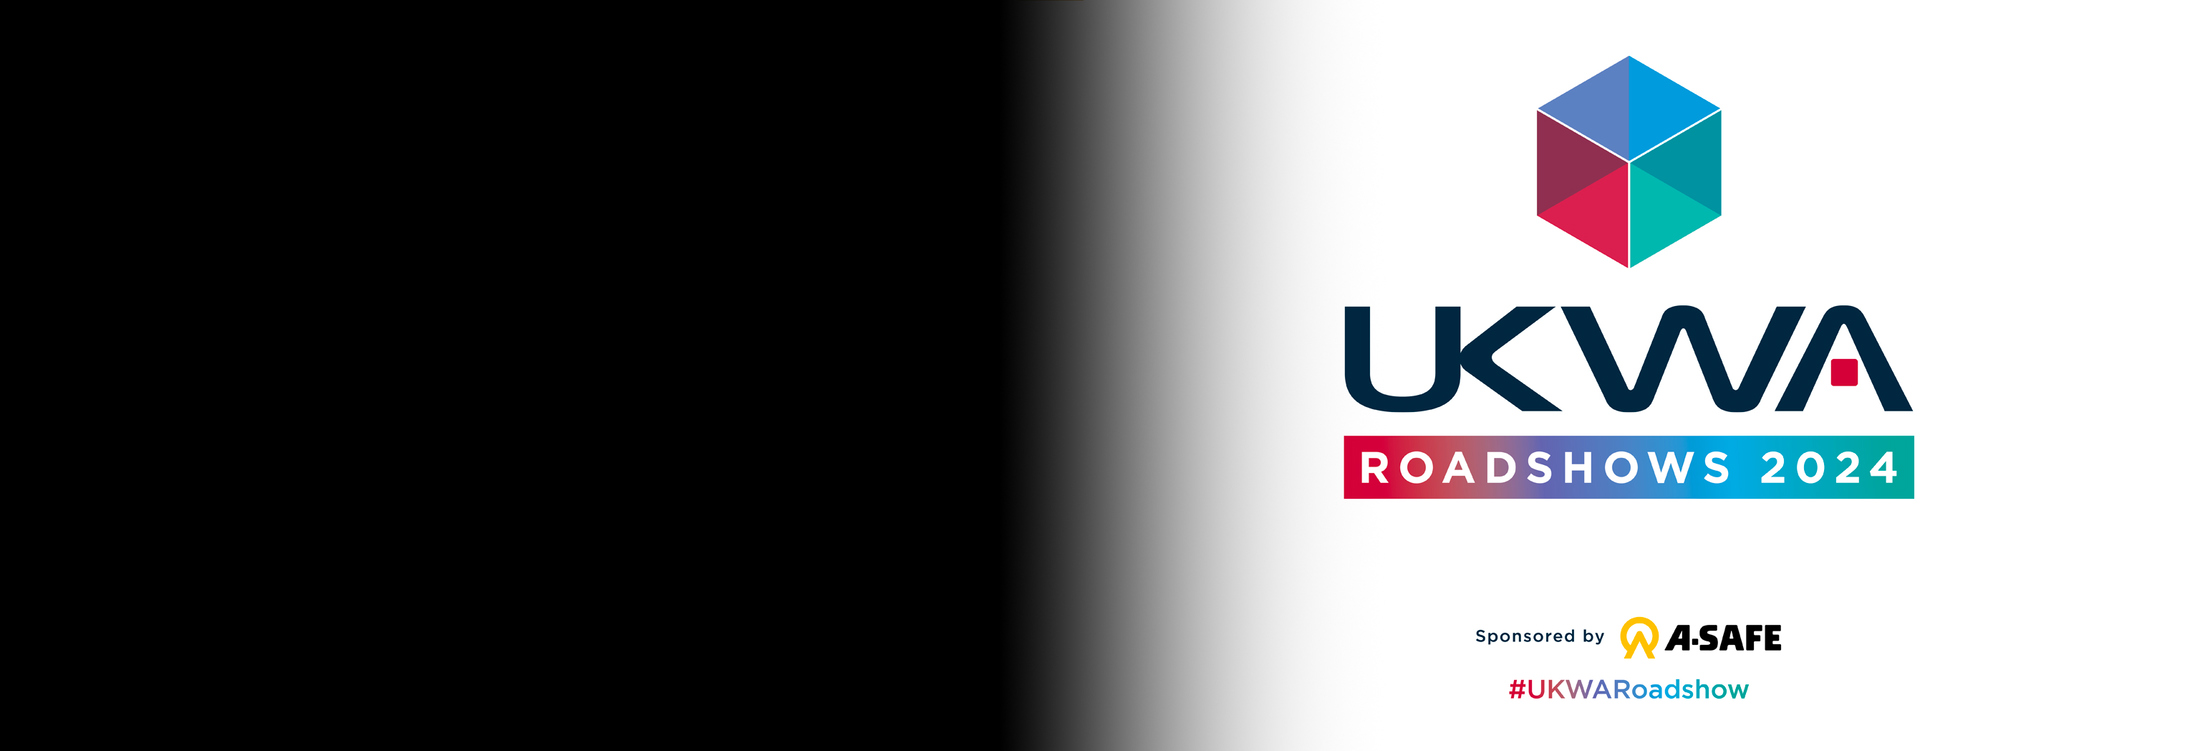 Proudly sponsoring the UKWA Roadshow 2024